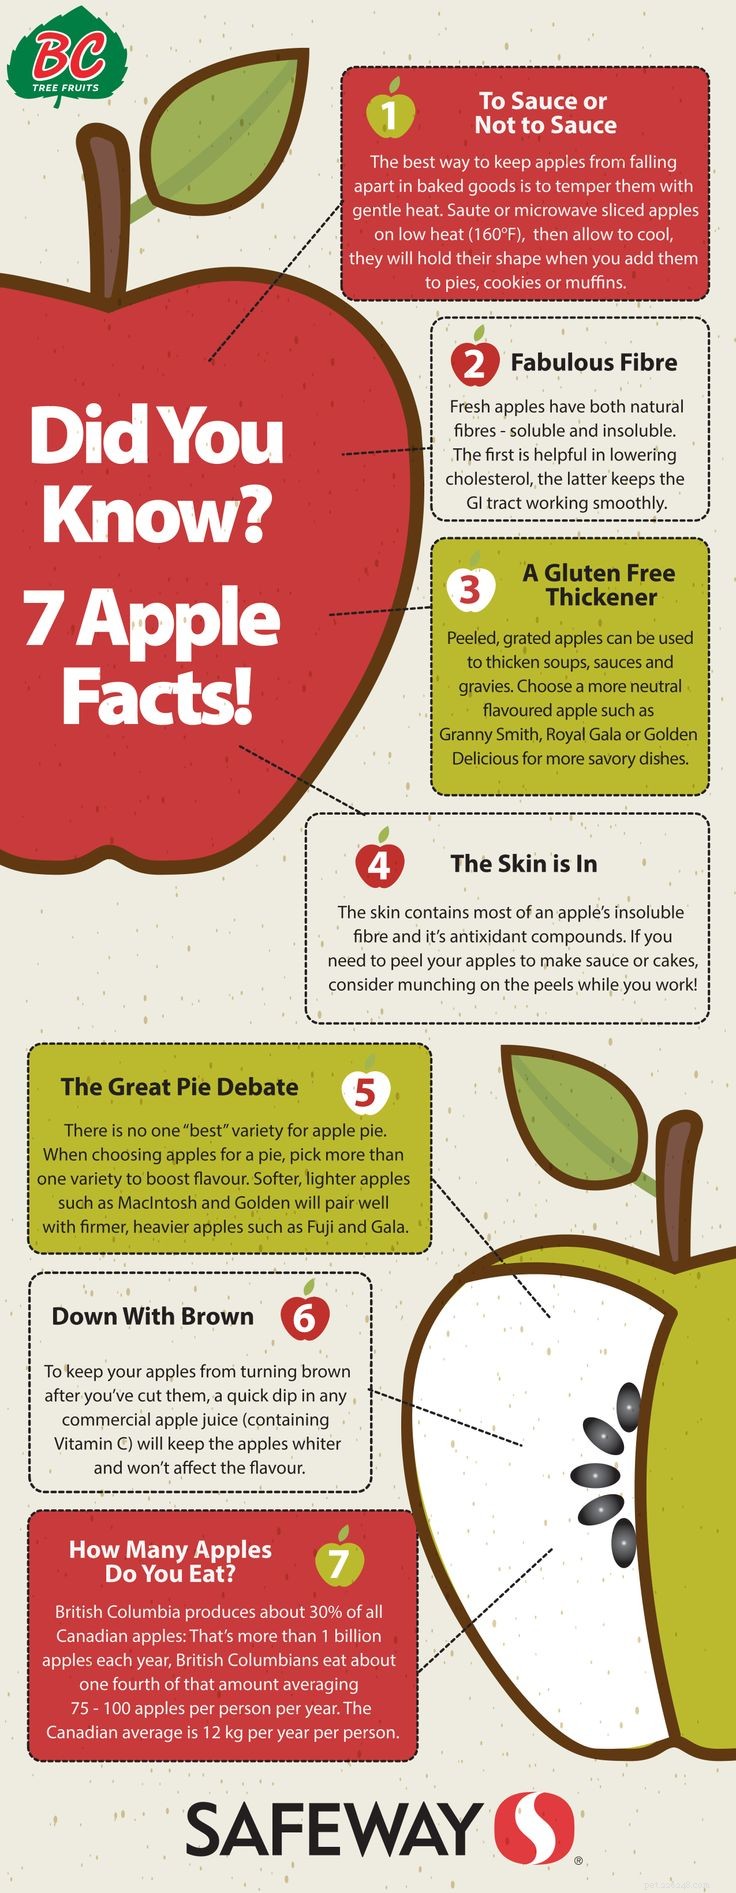 개가 사과를 먹을 수 있습니까? 8가지 잠재적 이점 및 3가지 주의 사항